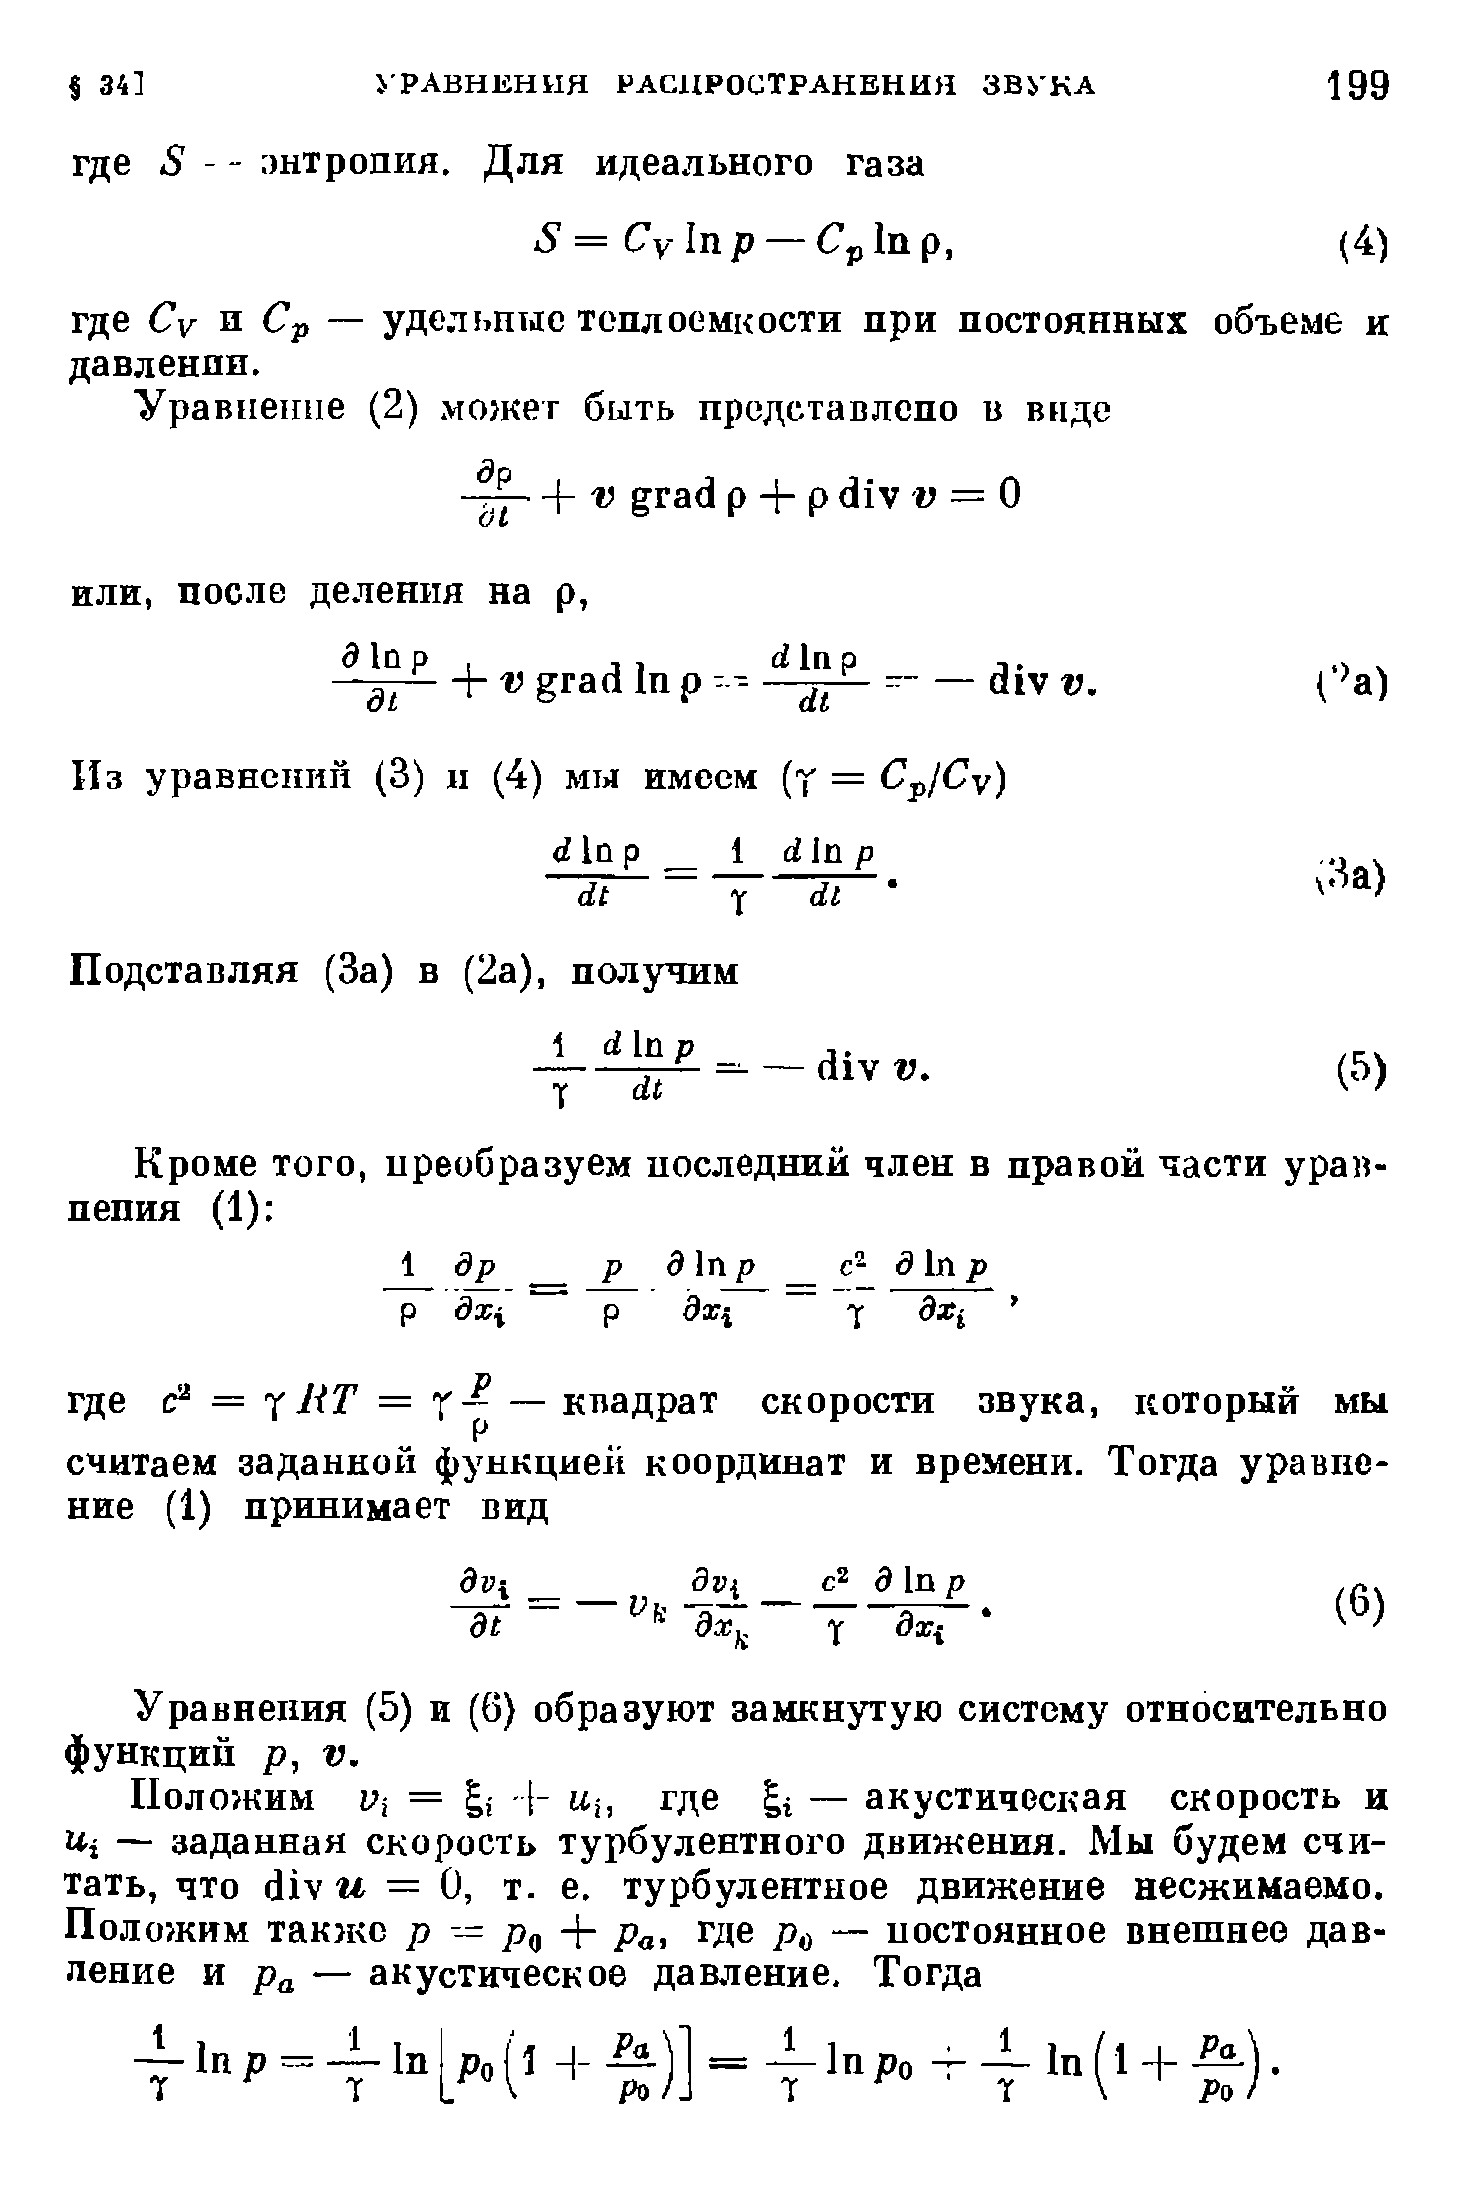 Уравнения (5) и (6) образуют замкнутую систему относительно функций р, V.
